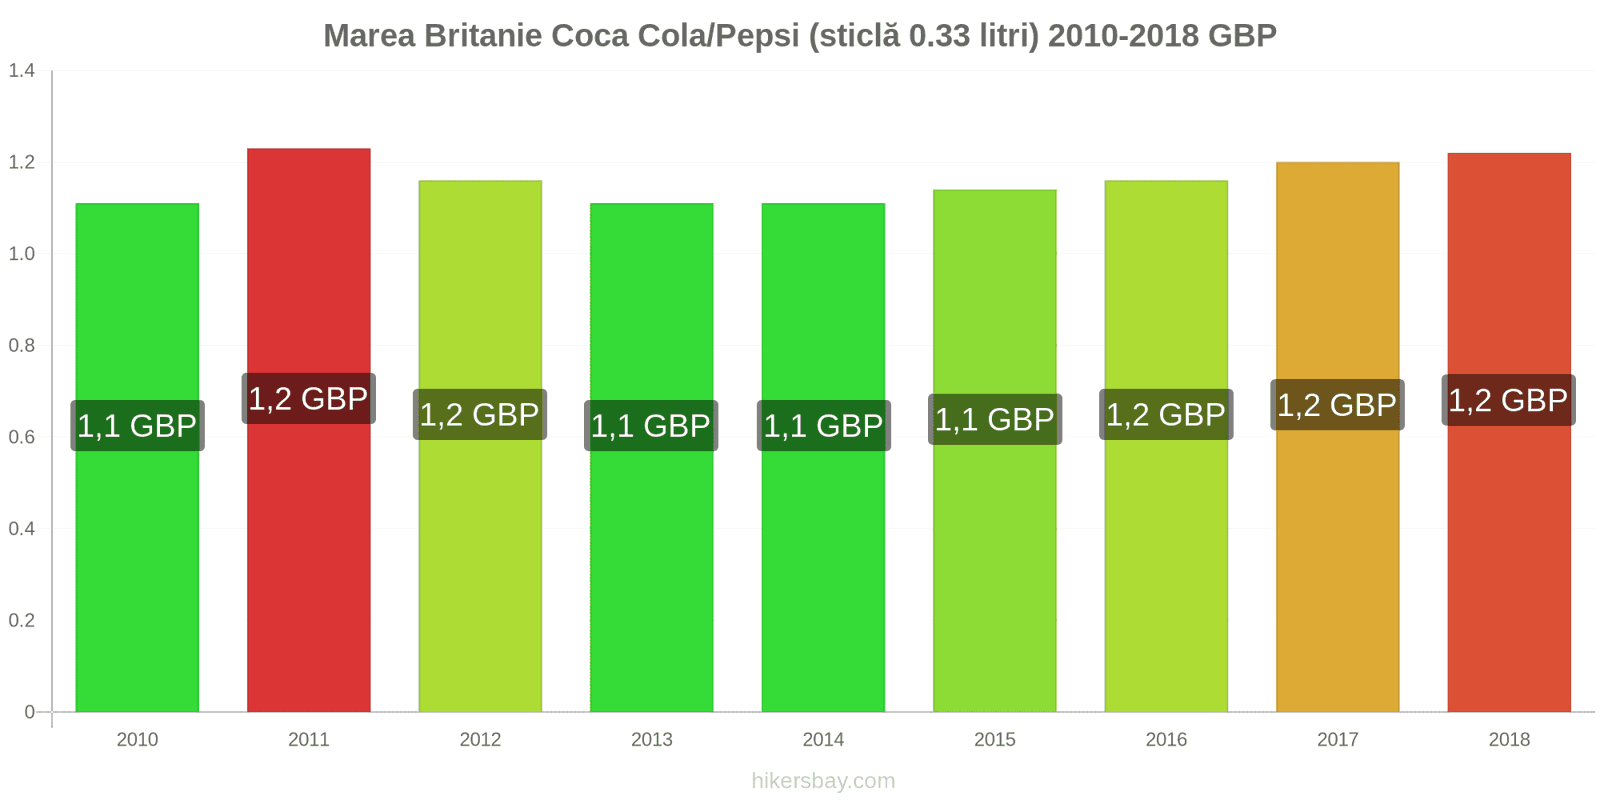 Marea Britanie schimbări de prețuri Coca-Cola/Pepsi (sticlă de 0.33 litri) hikersbay.com